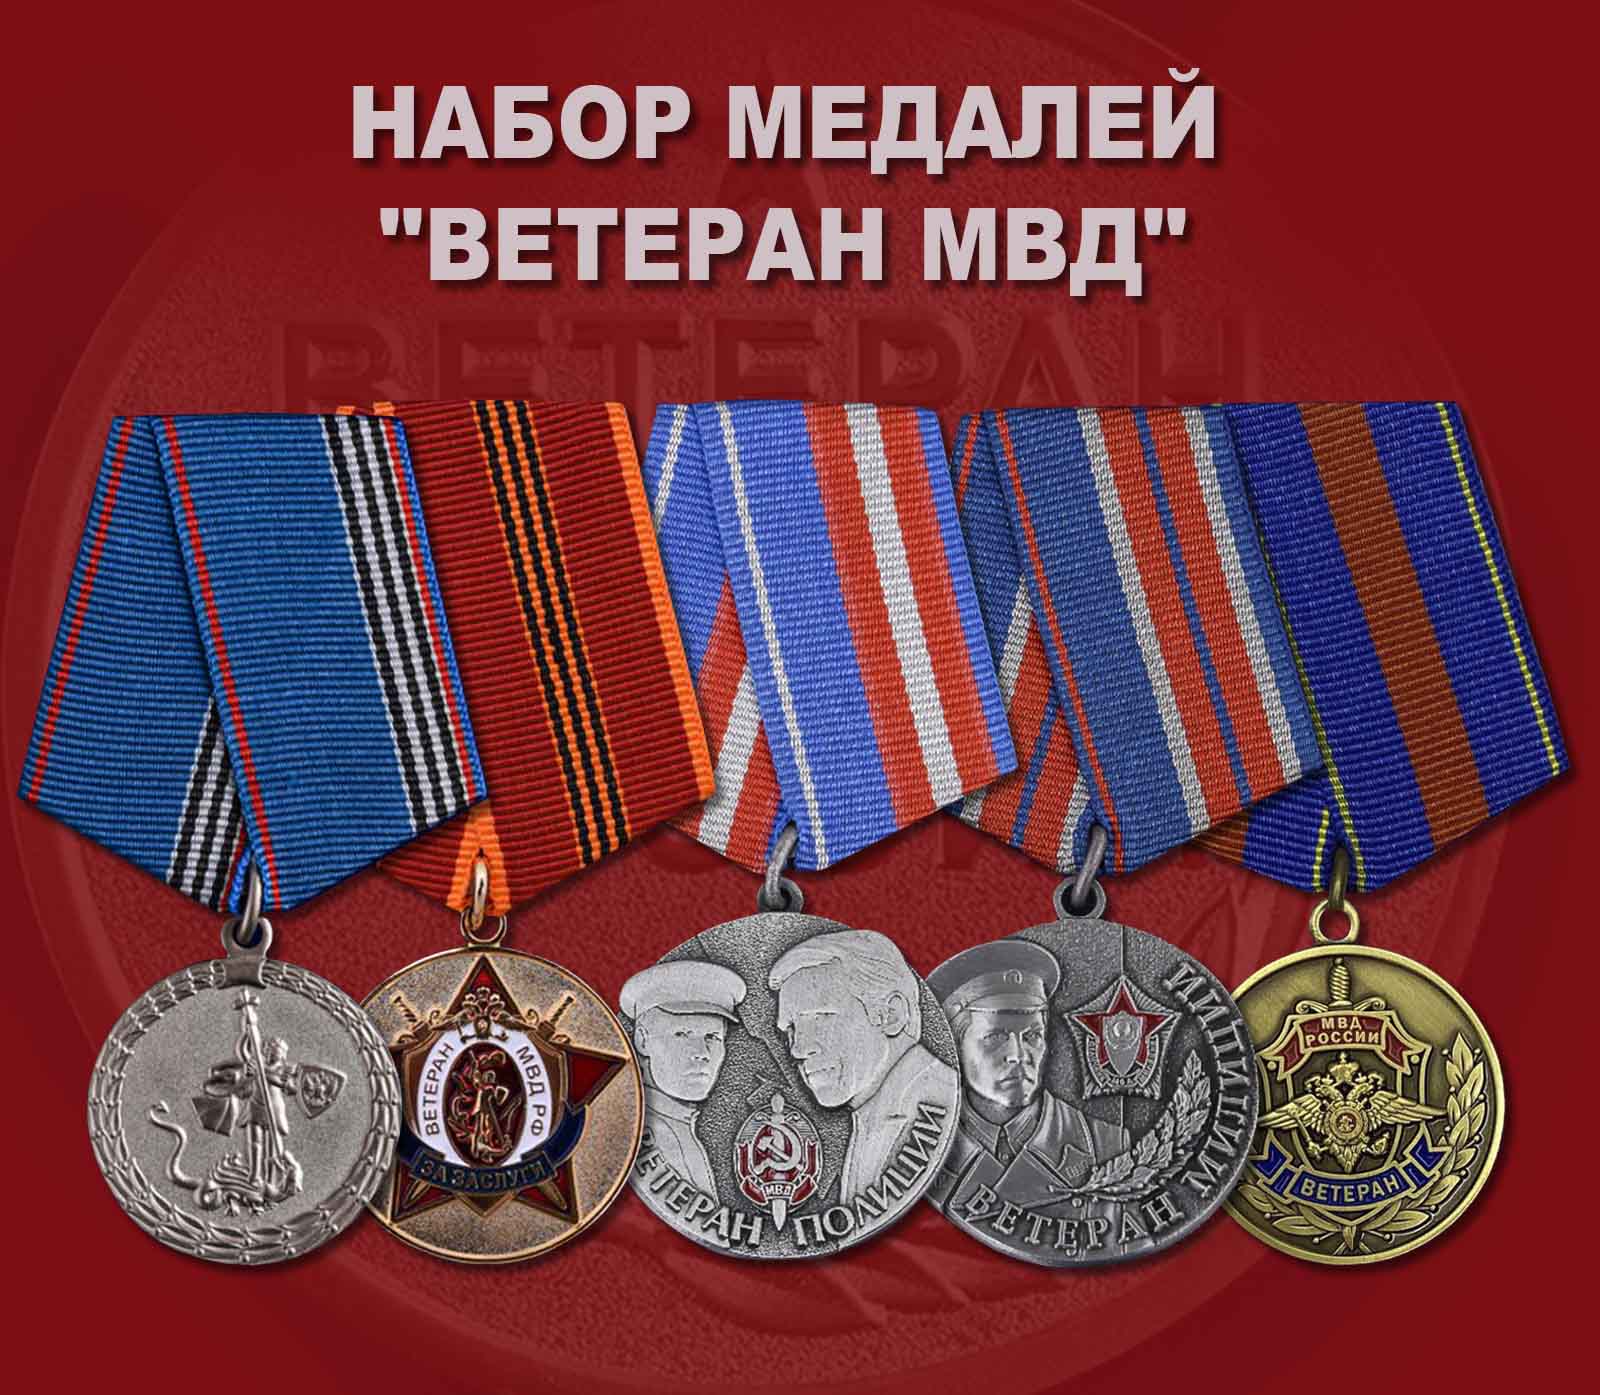 Купить набор медалей "Ветеран МВД"